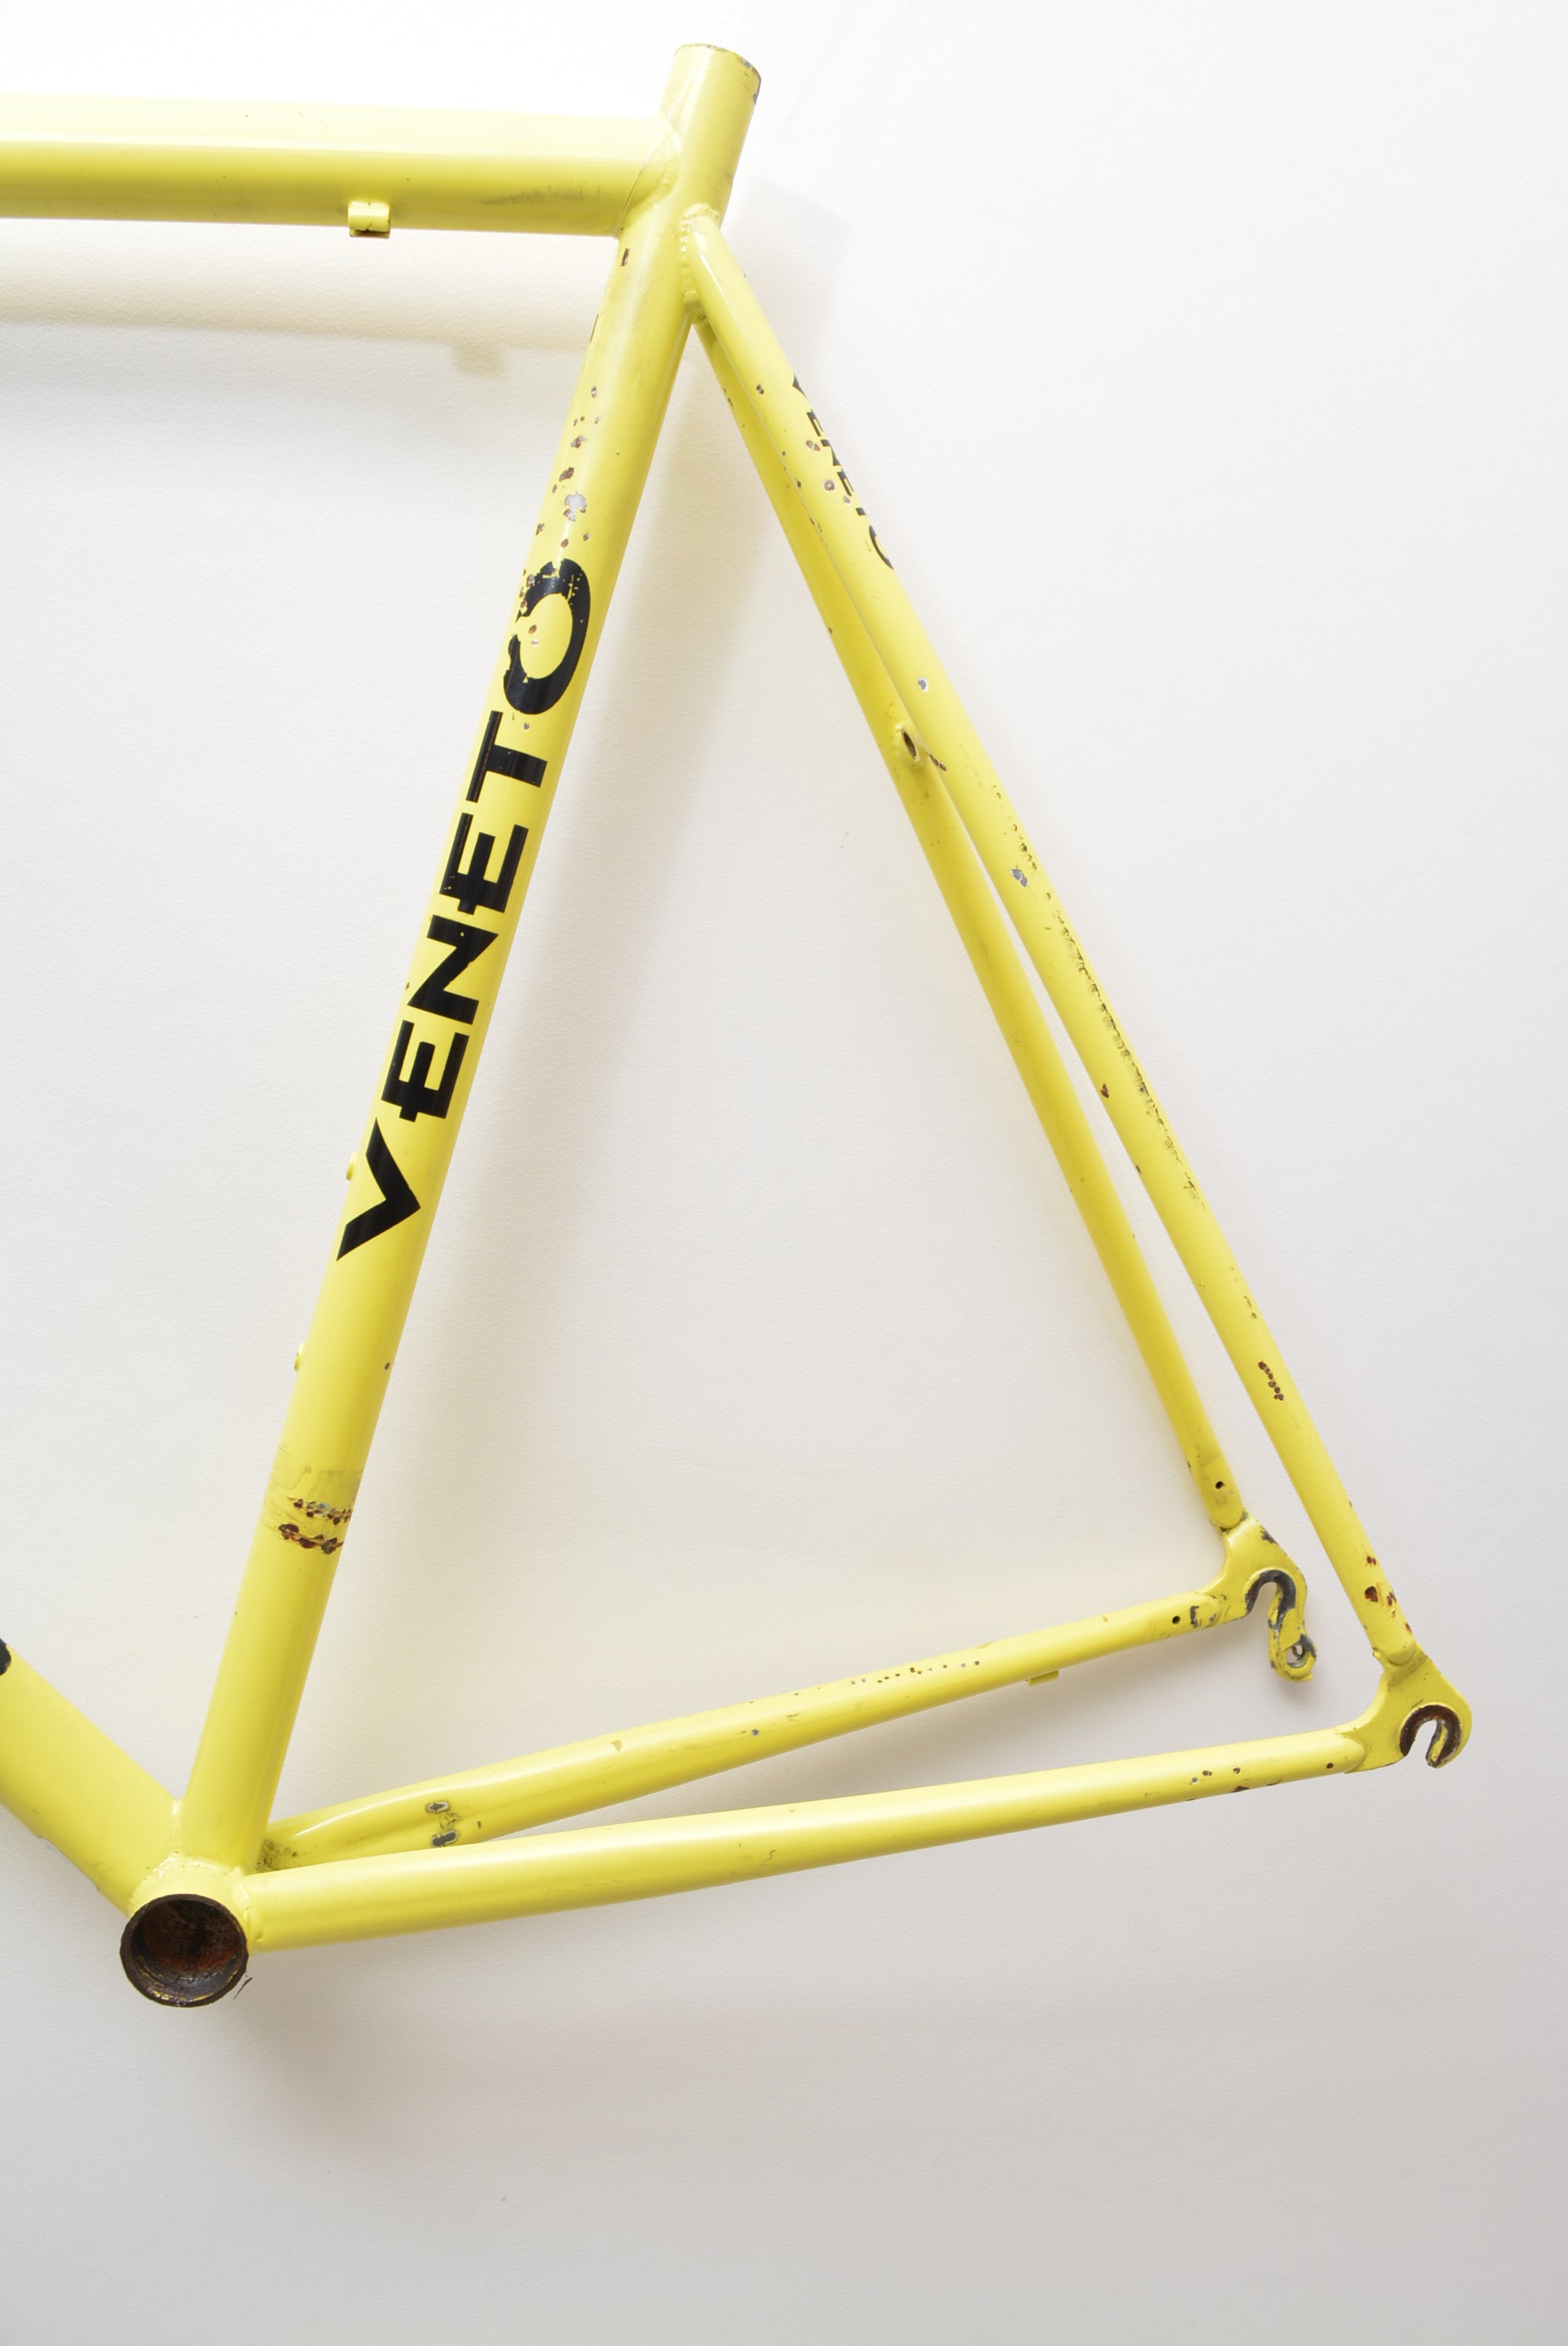 Veneto Rennradrahmen First 58cm stahl Rahmenset